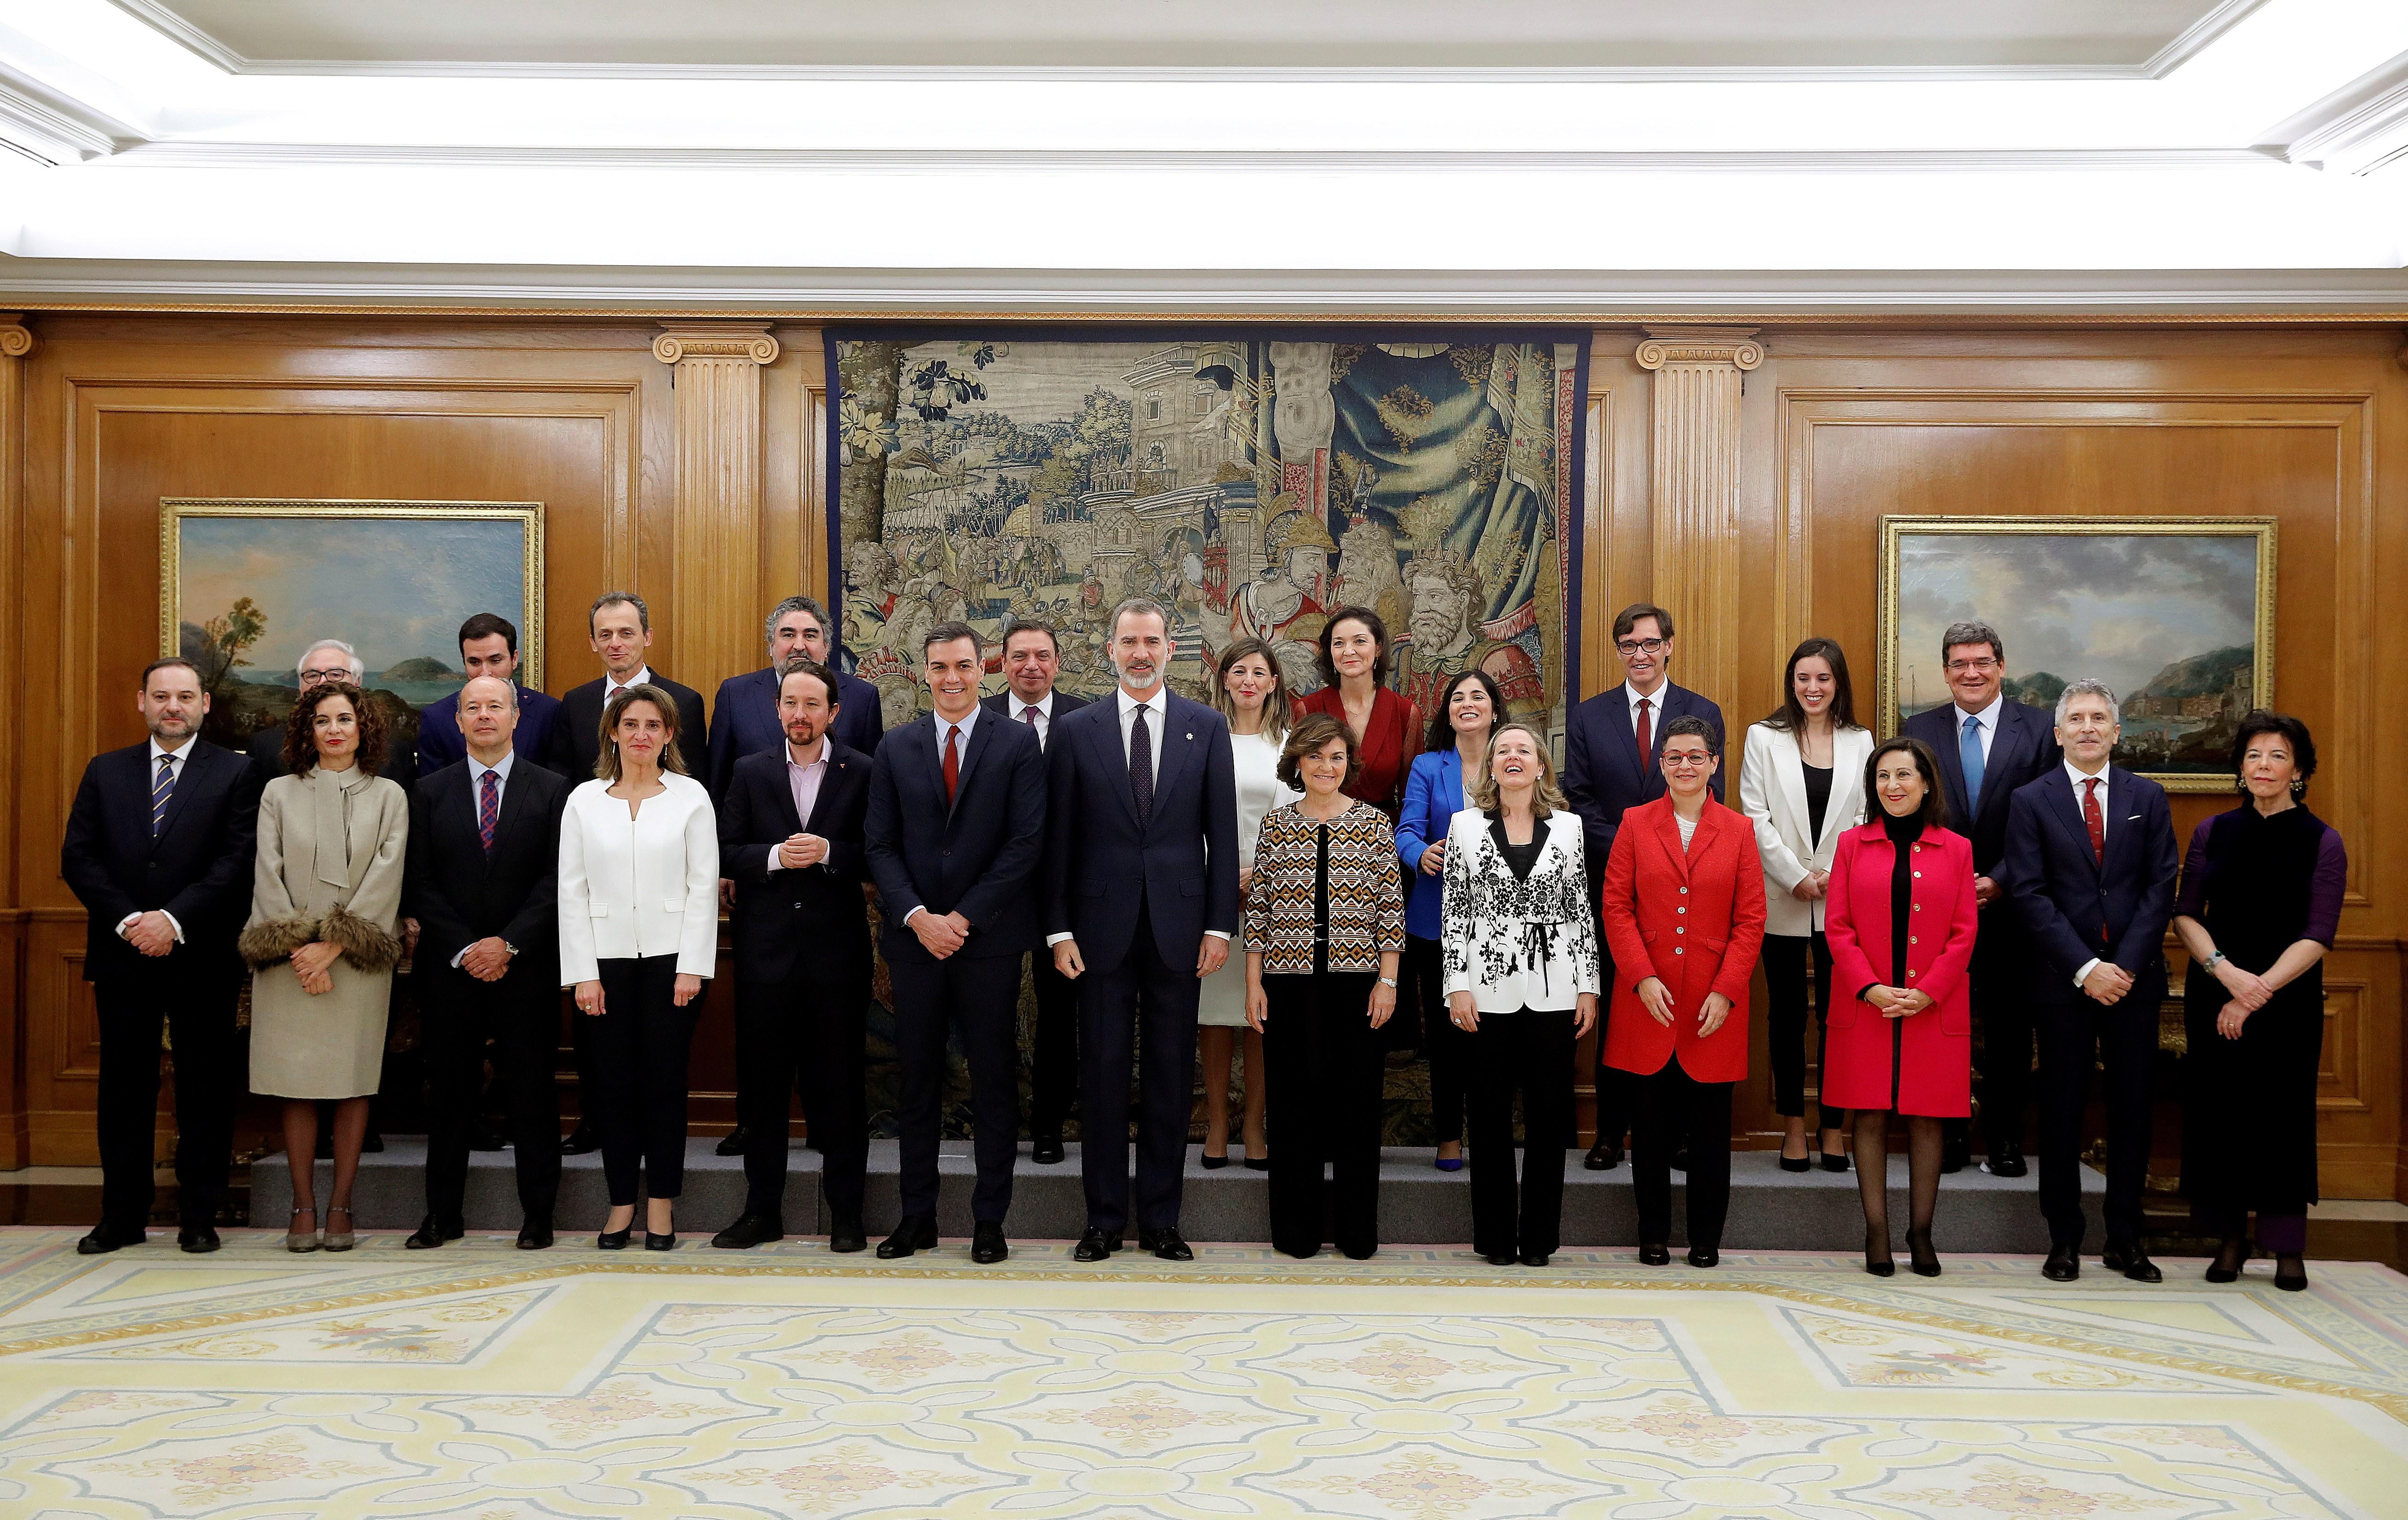 Foto de familia del president,e los cuatro vicepresidentes y de los 18 ministros que componen el Gobierno de coalición del PSOE y Unidas Podemos en la XIV Legislatura